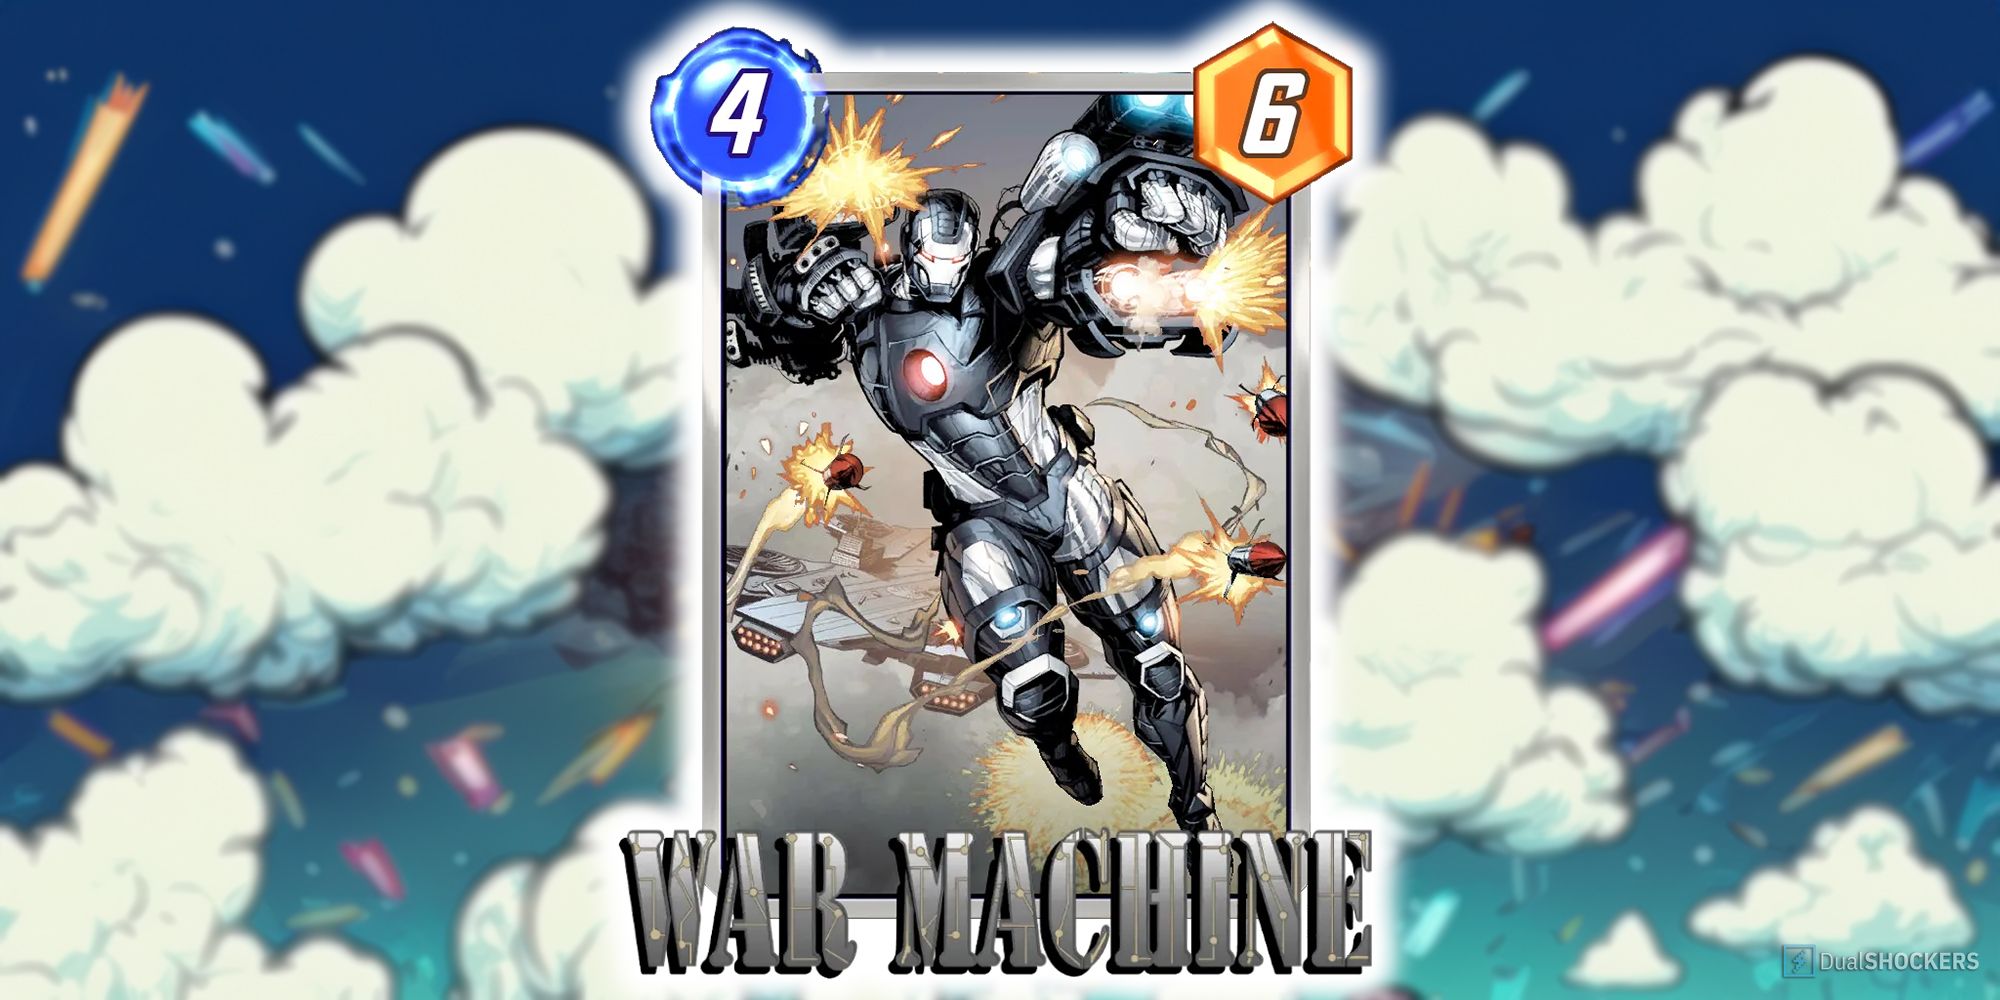 War Machine's card in Marvel Snap.